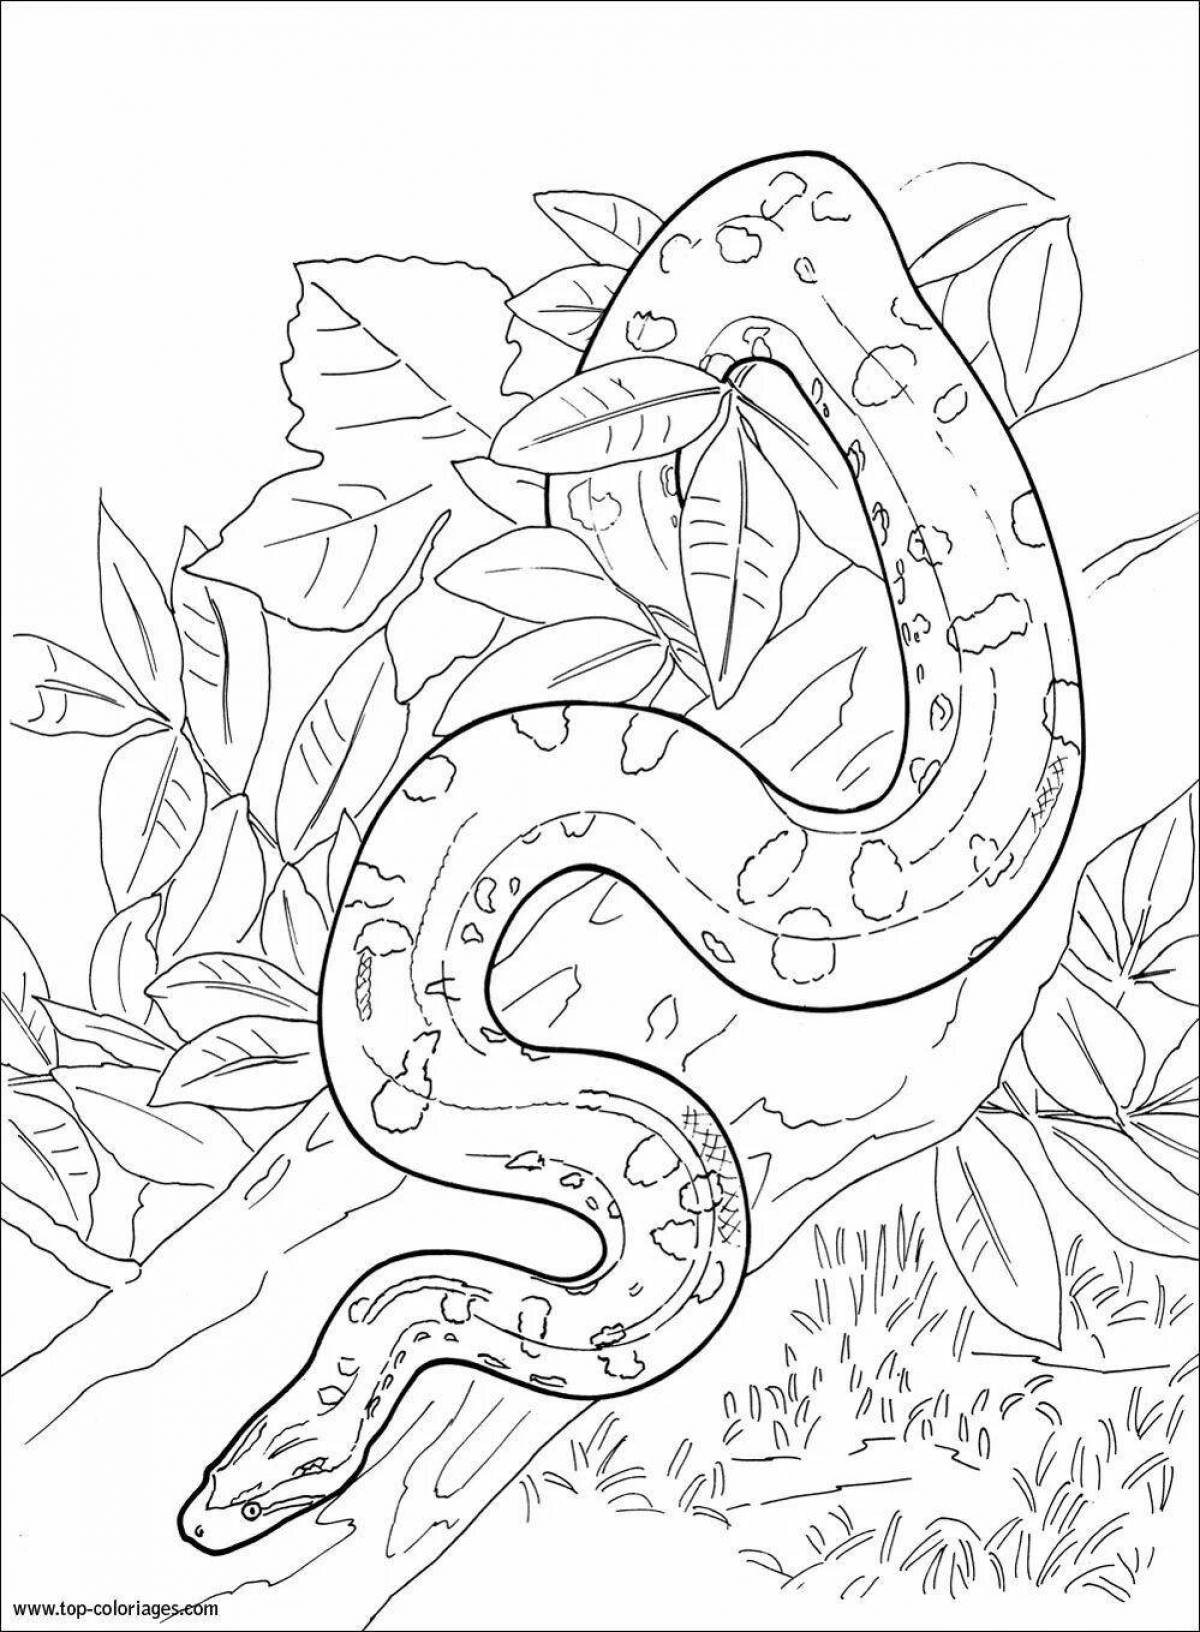 Vivid anaconda coloring page